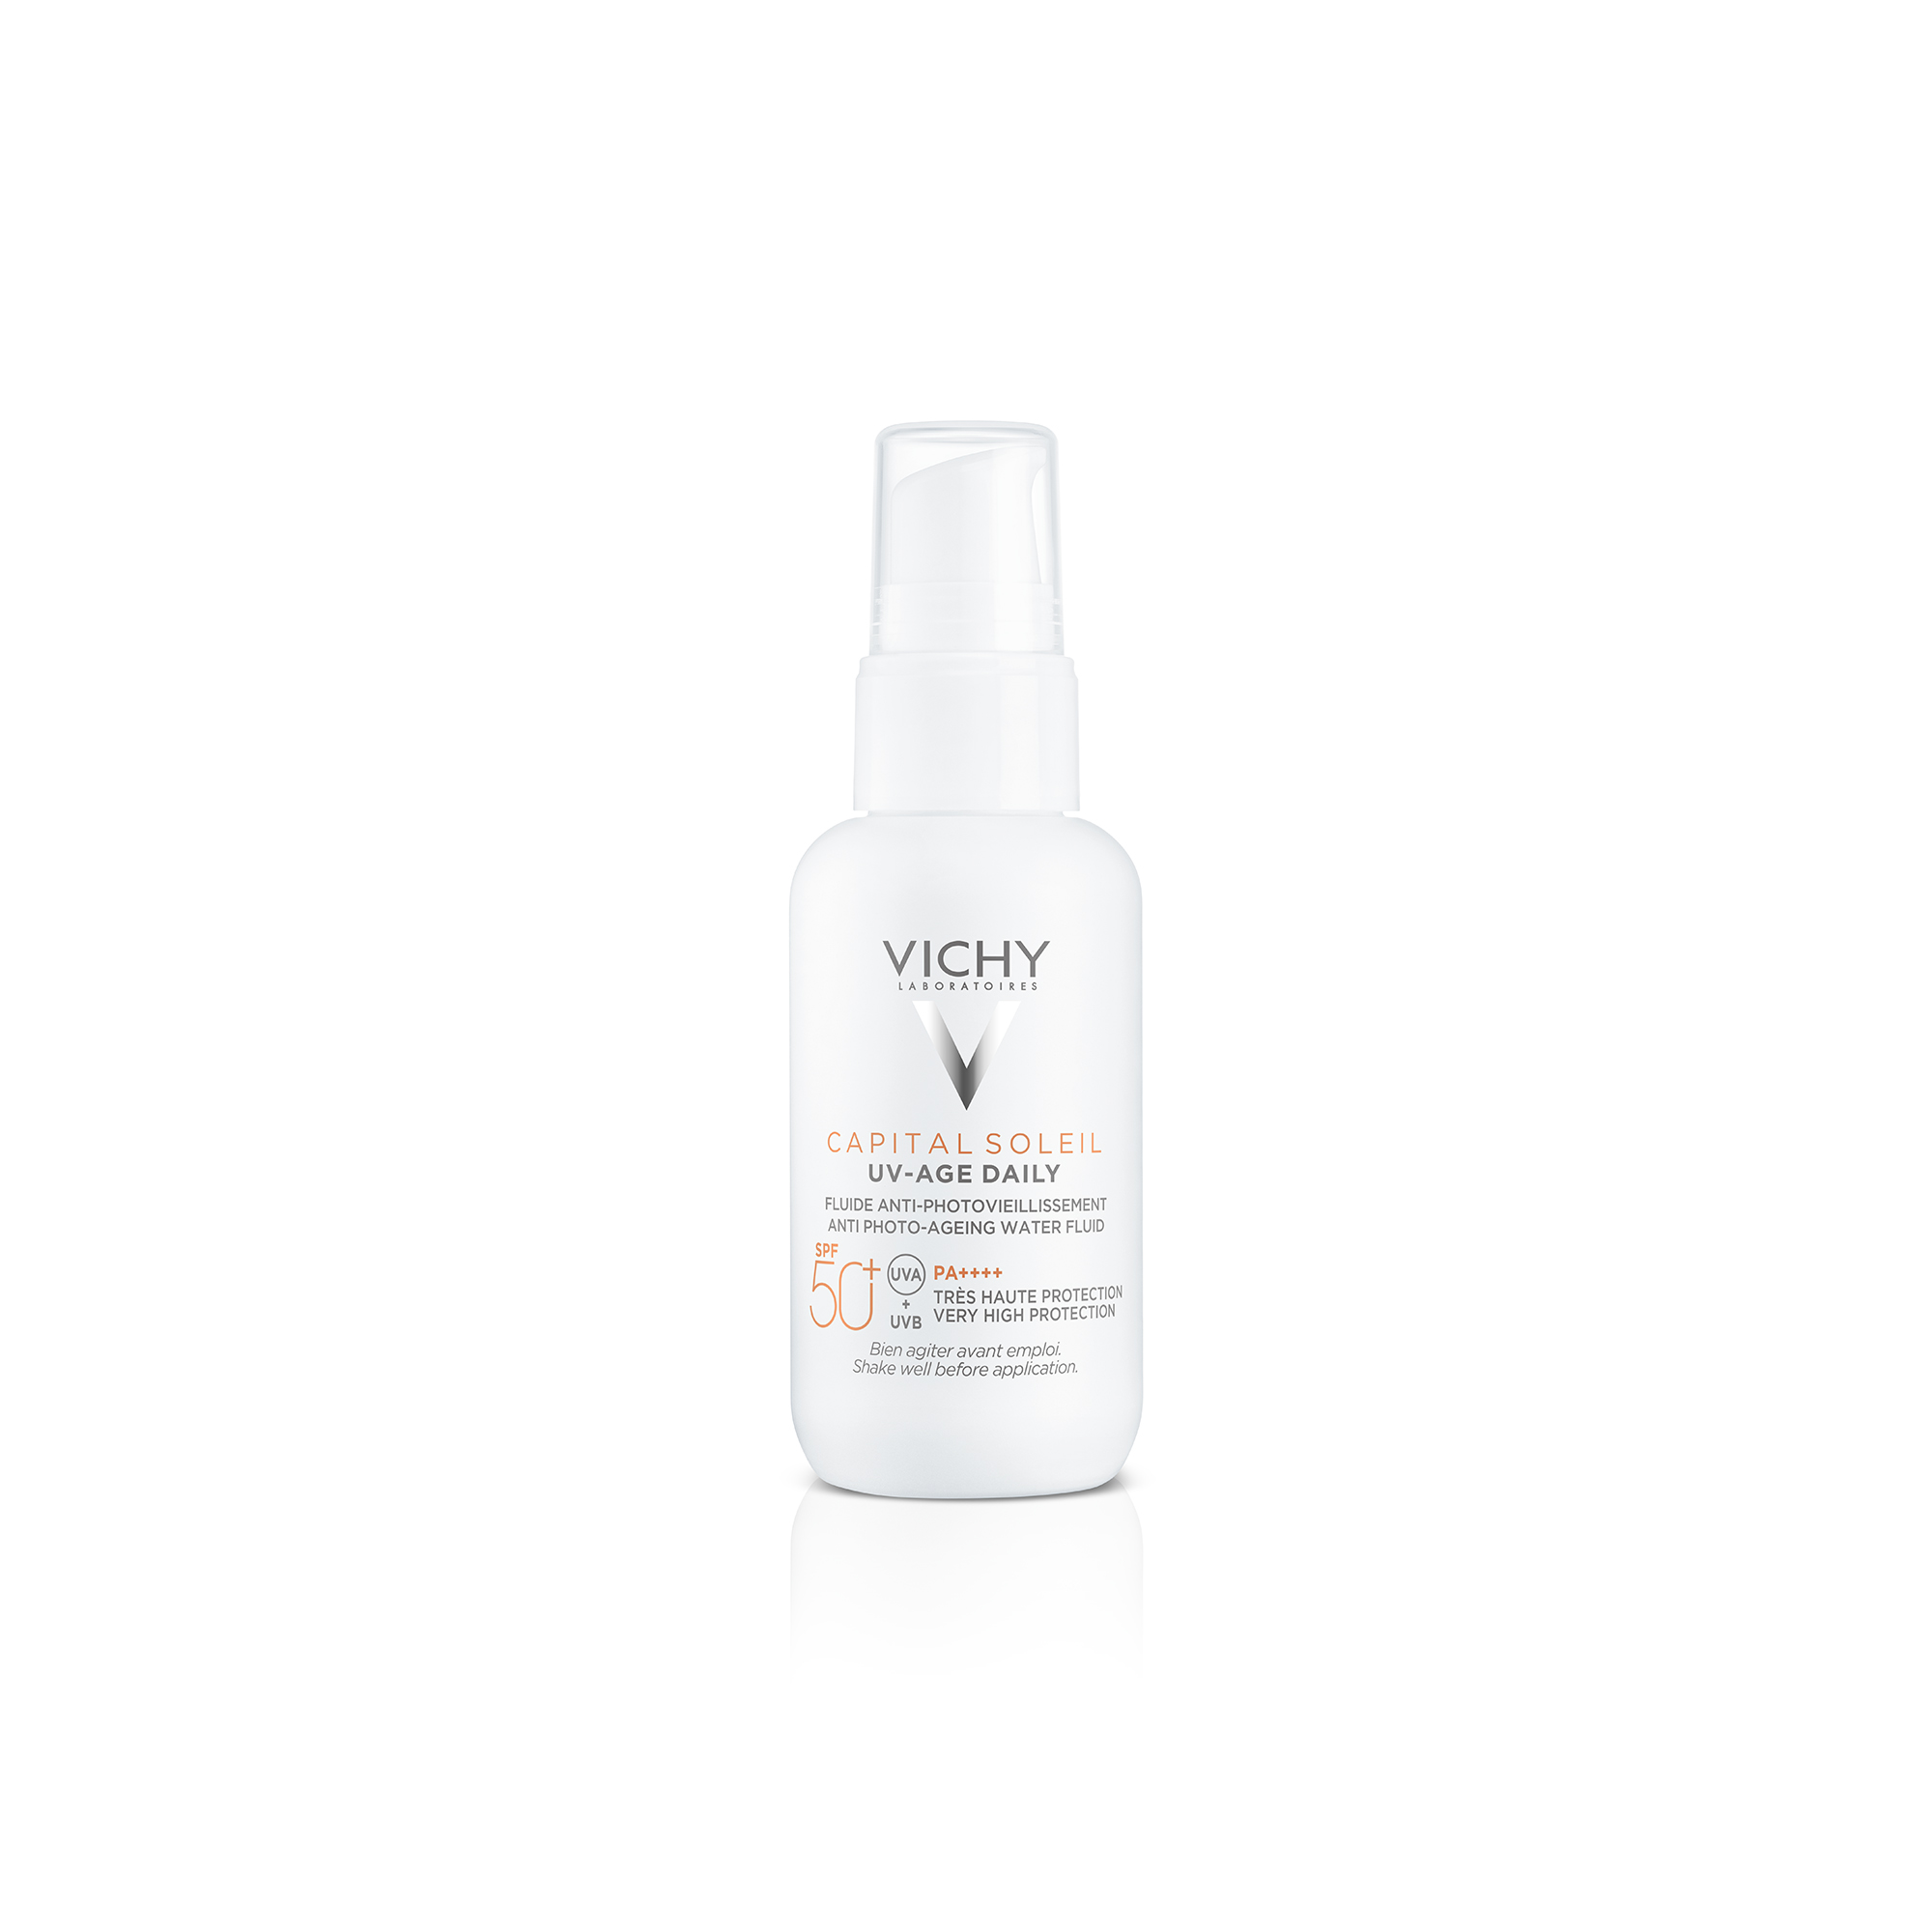 VICHY CAPITAL SOLEIL UV-AGE Daily fényvédő fluid photo-aging ellen SPF 50+ 40ml képe